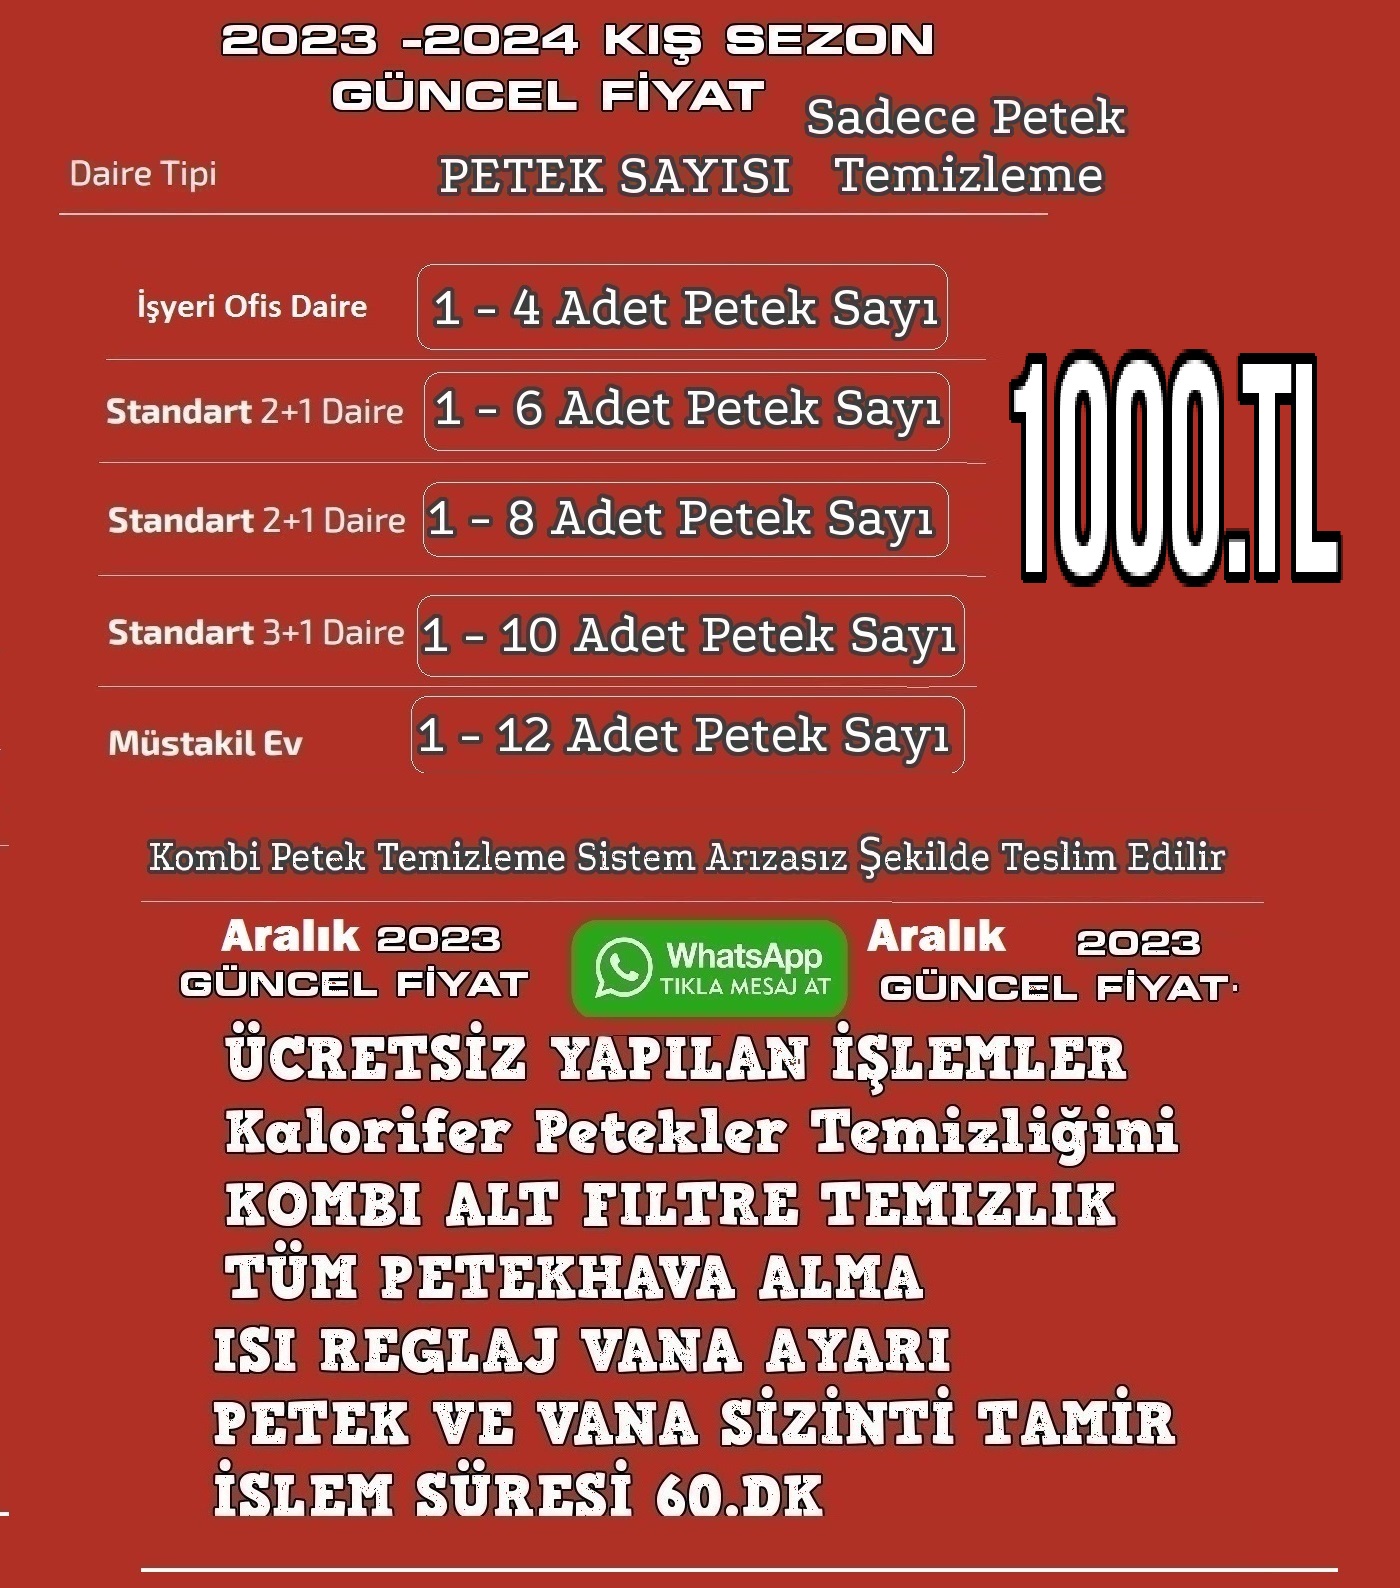 Beşiktaş Abbasağa Kombi Petek Temizliği-Beşiktaş Abbasağa Kombi Petek Temizleme | Kombi Petek Temizliği Beşiktaş Abbasağa.